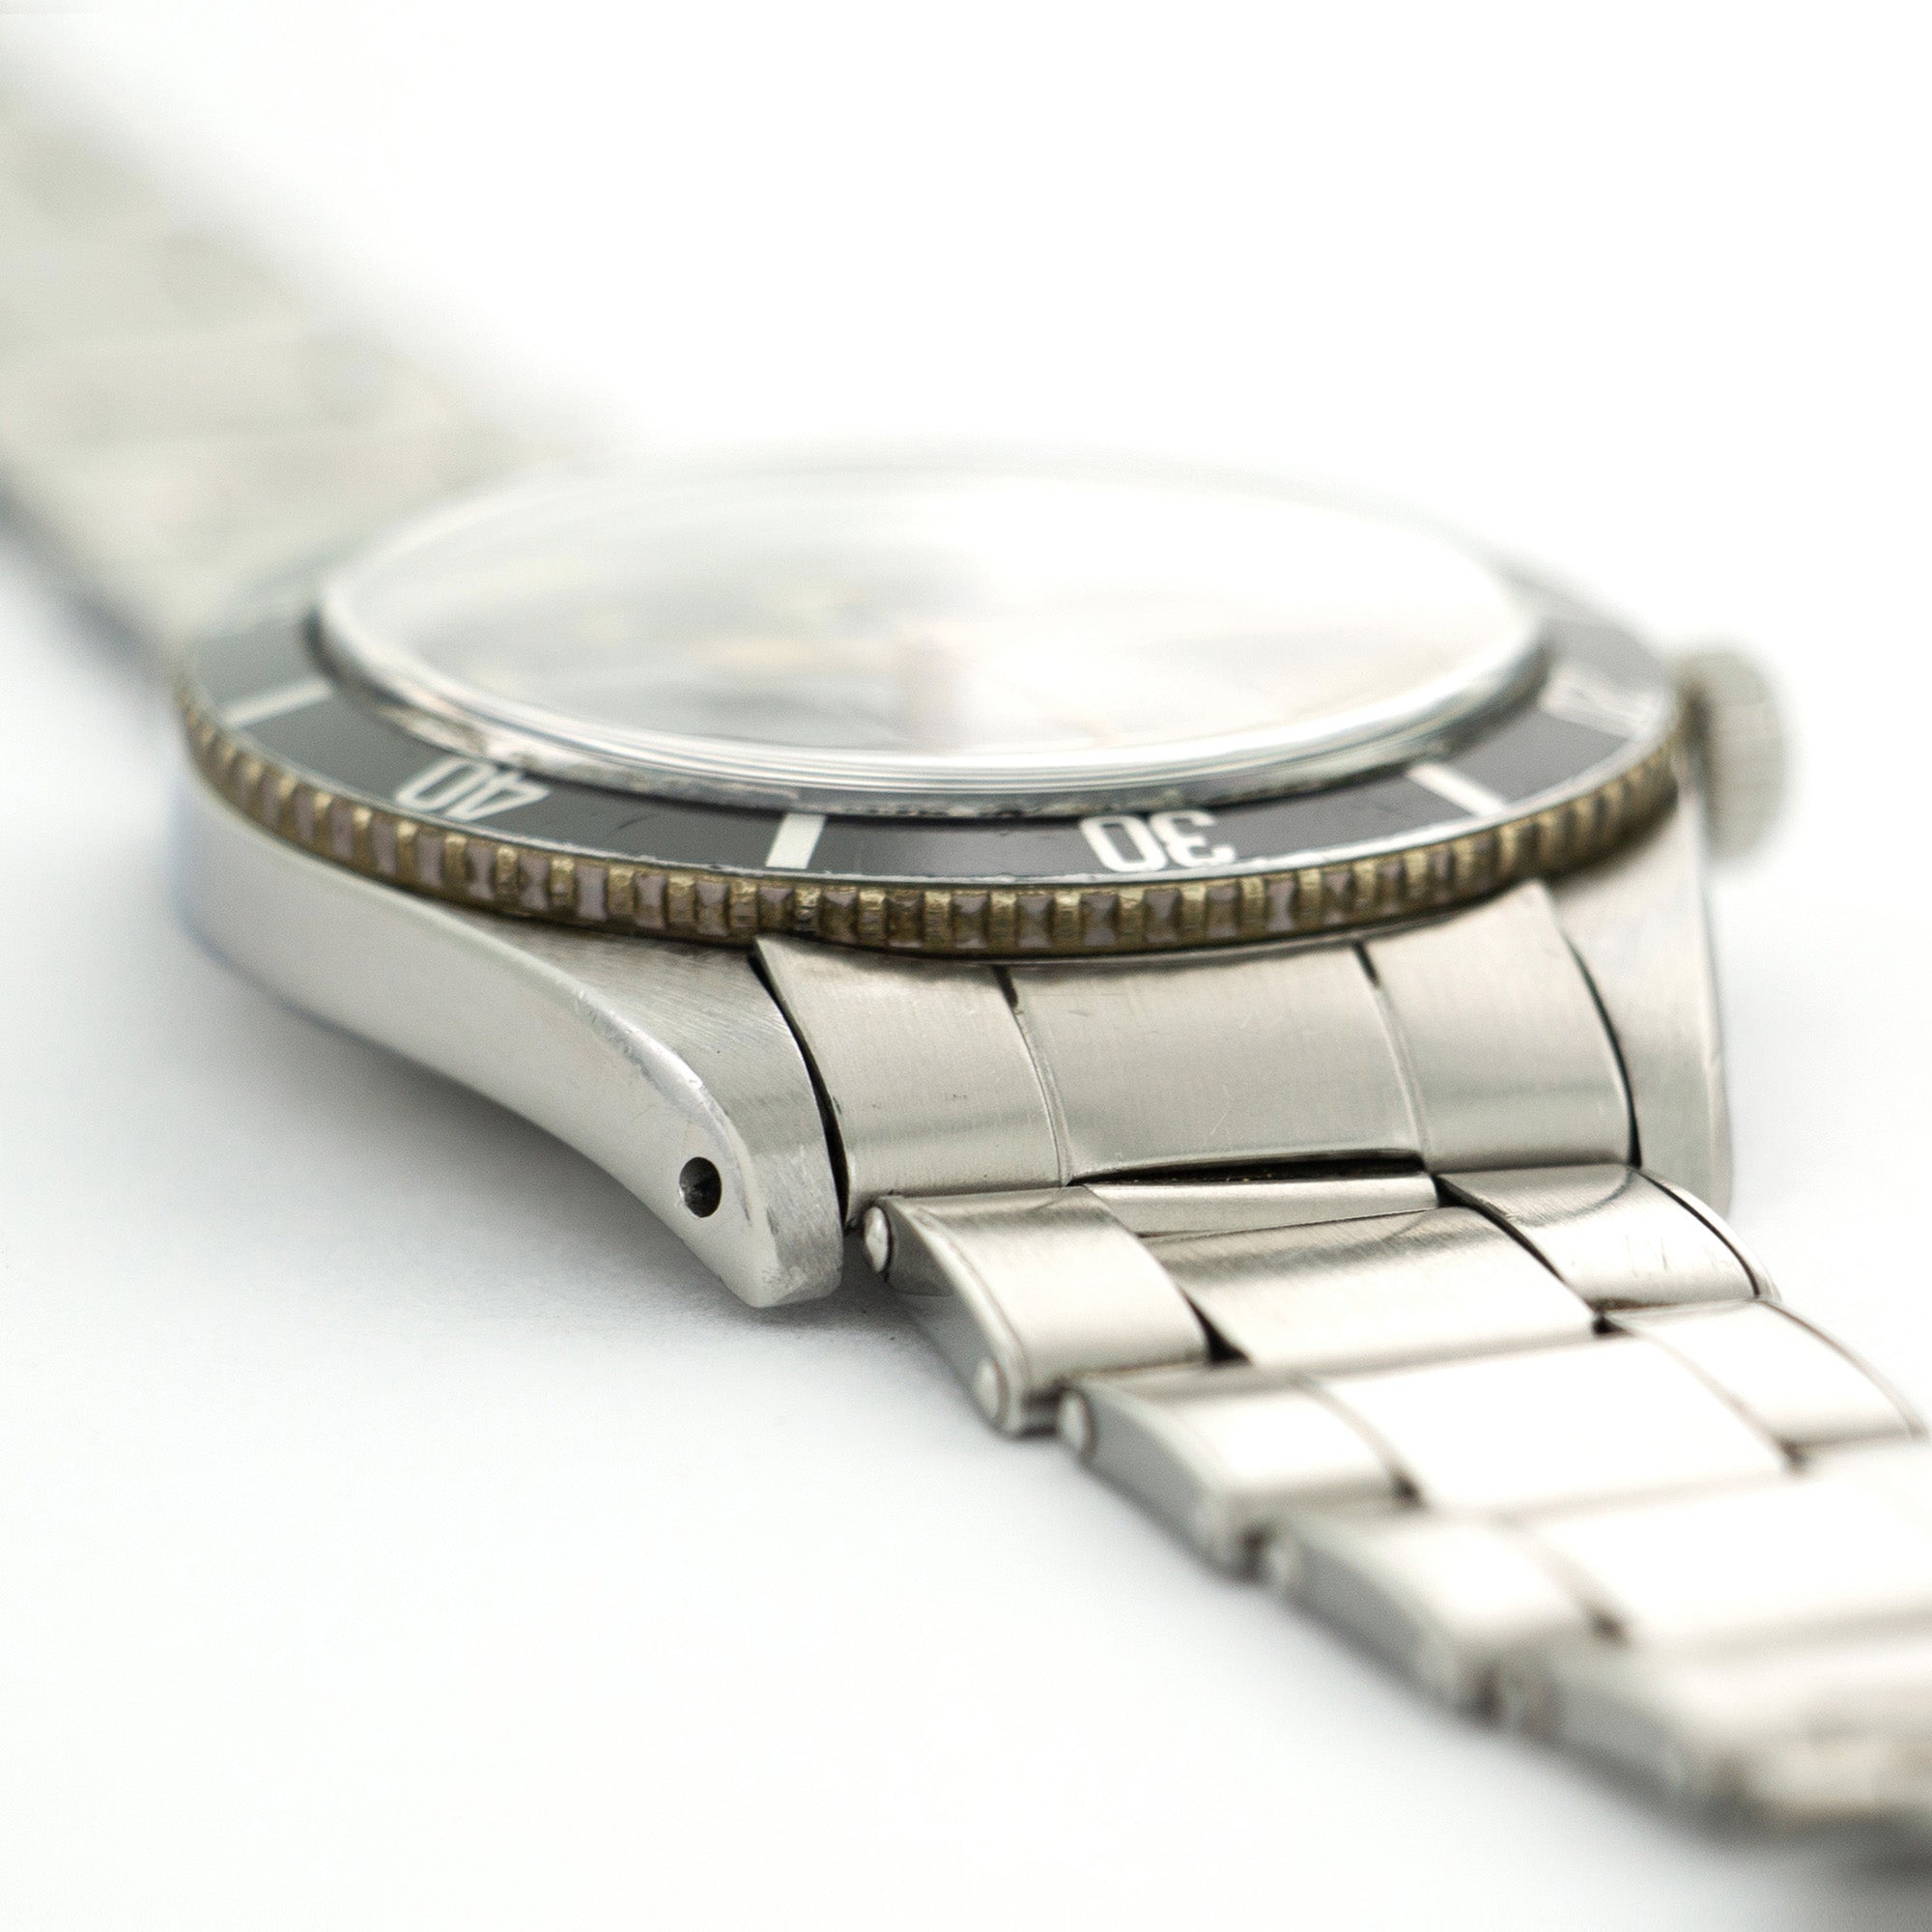 Rolex - Rolex Submariner Watch Ref. 5508 - The Keystone Watches